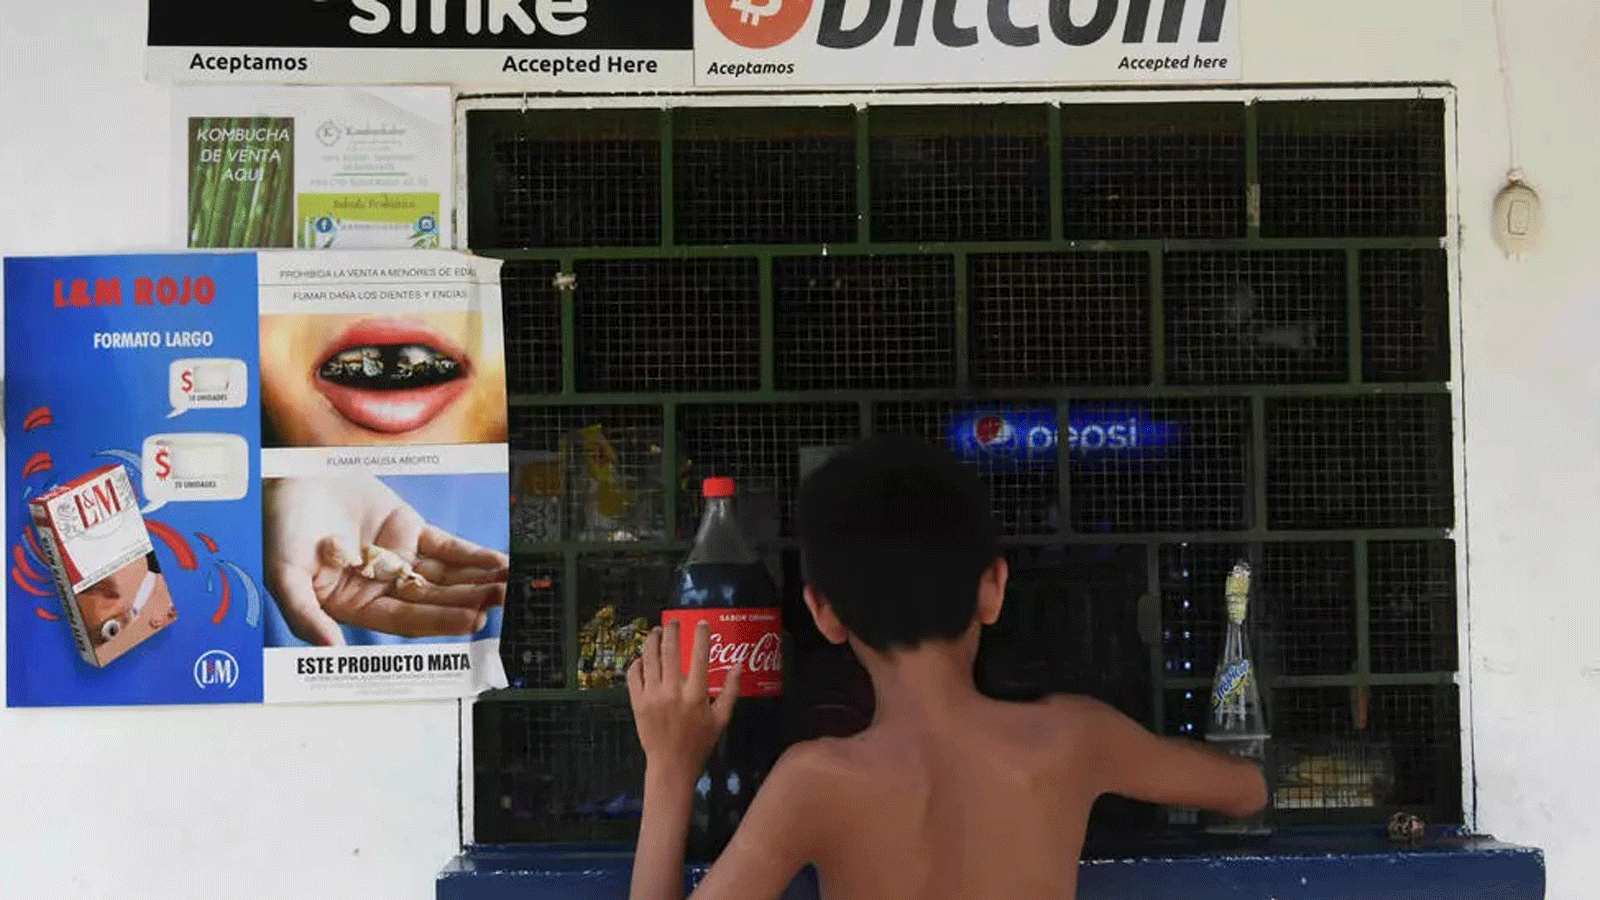 قبول العملة المشفرة بيتكوين(Bitcoin) في أحمد المتاجر في El Zonte في السلفادور الذي بدأ باستخدامها كعملة قانونية